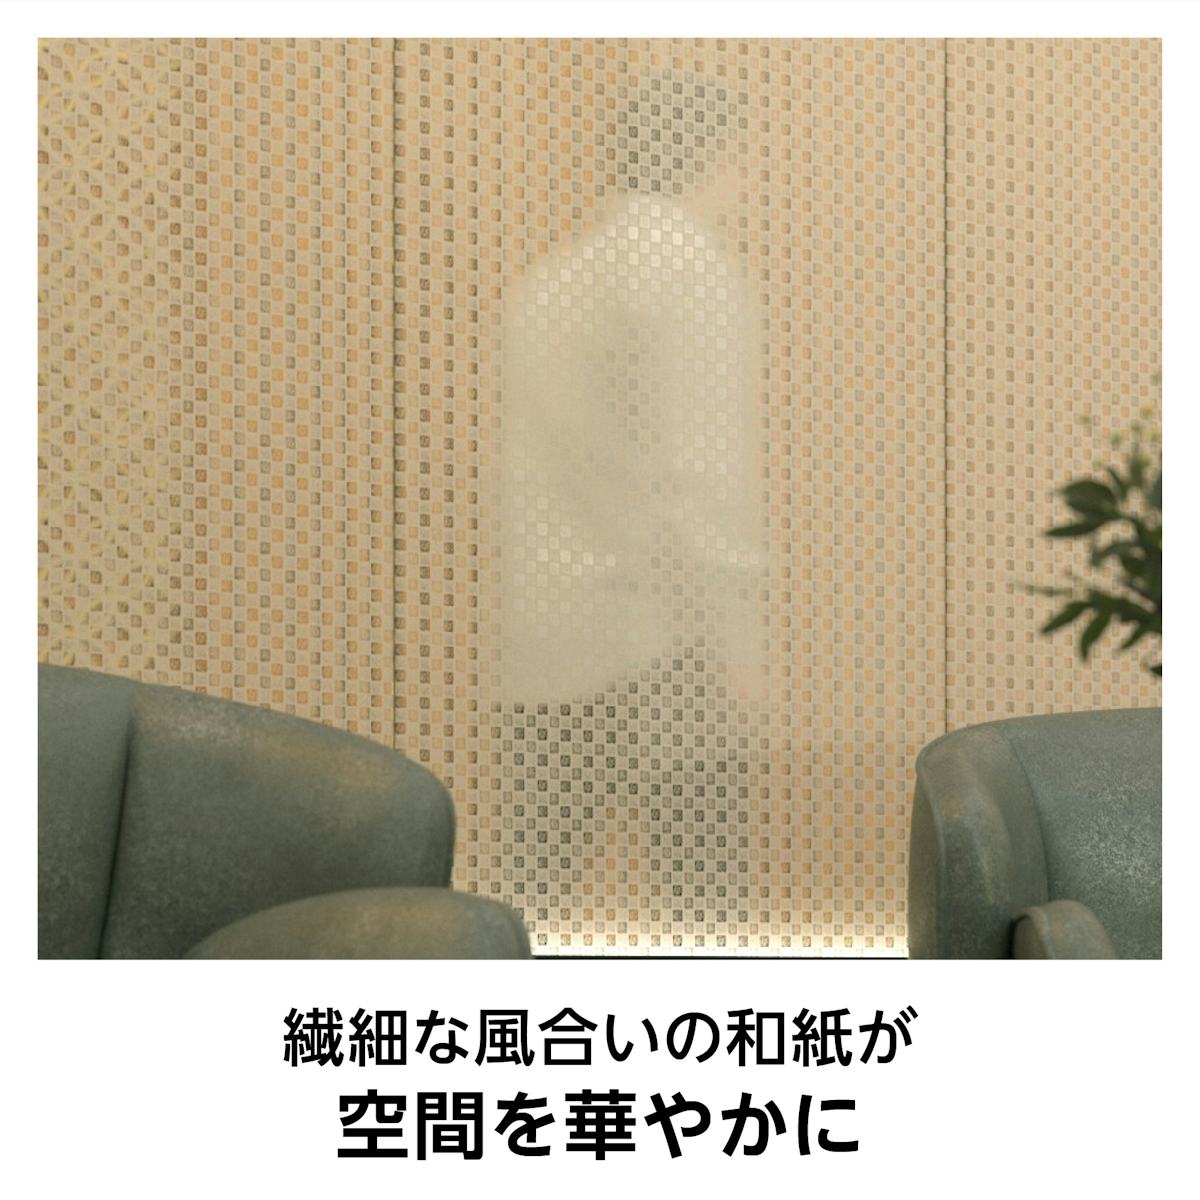 和紙ガラス(和紙調・和風ガラス) - 日本三大和紙の「土佐和紙」を使用